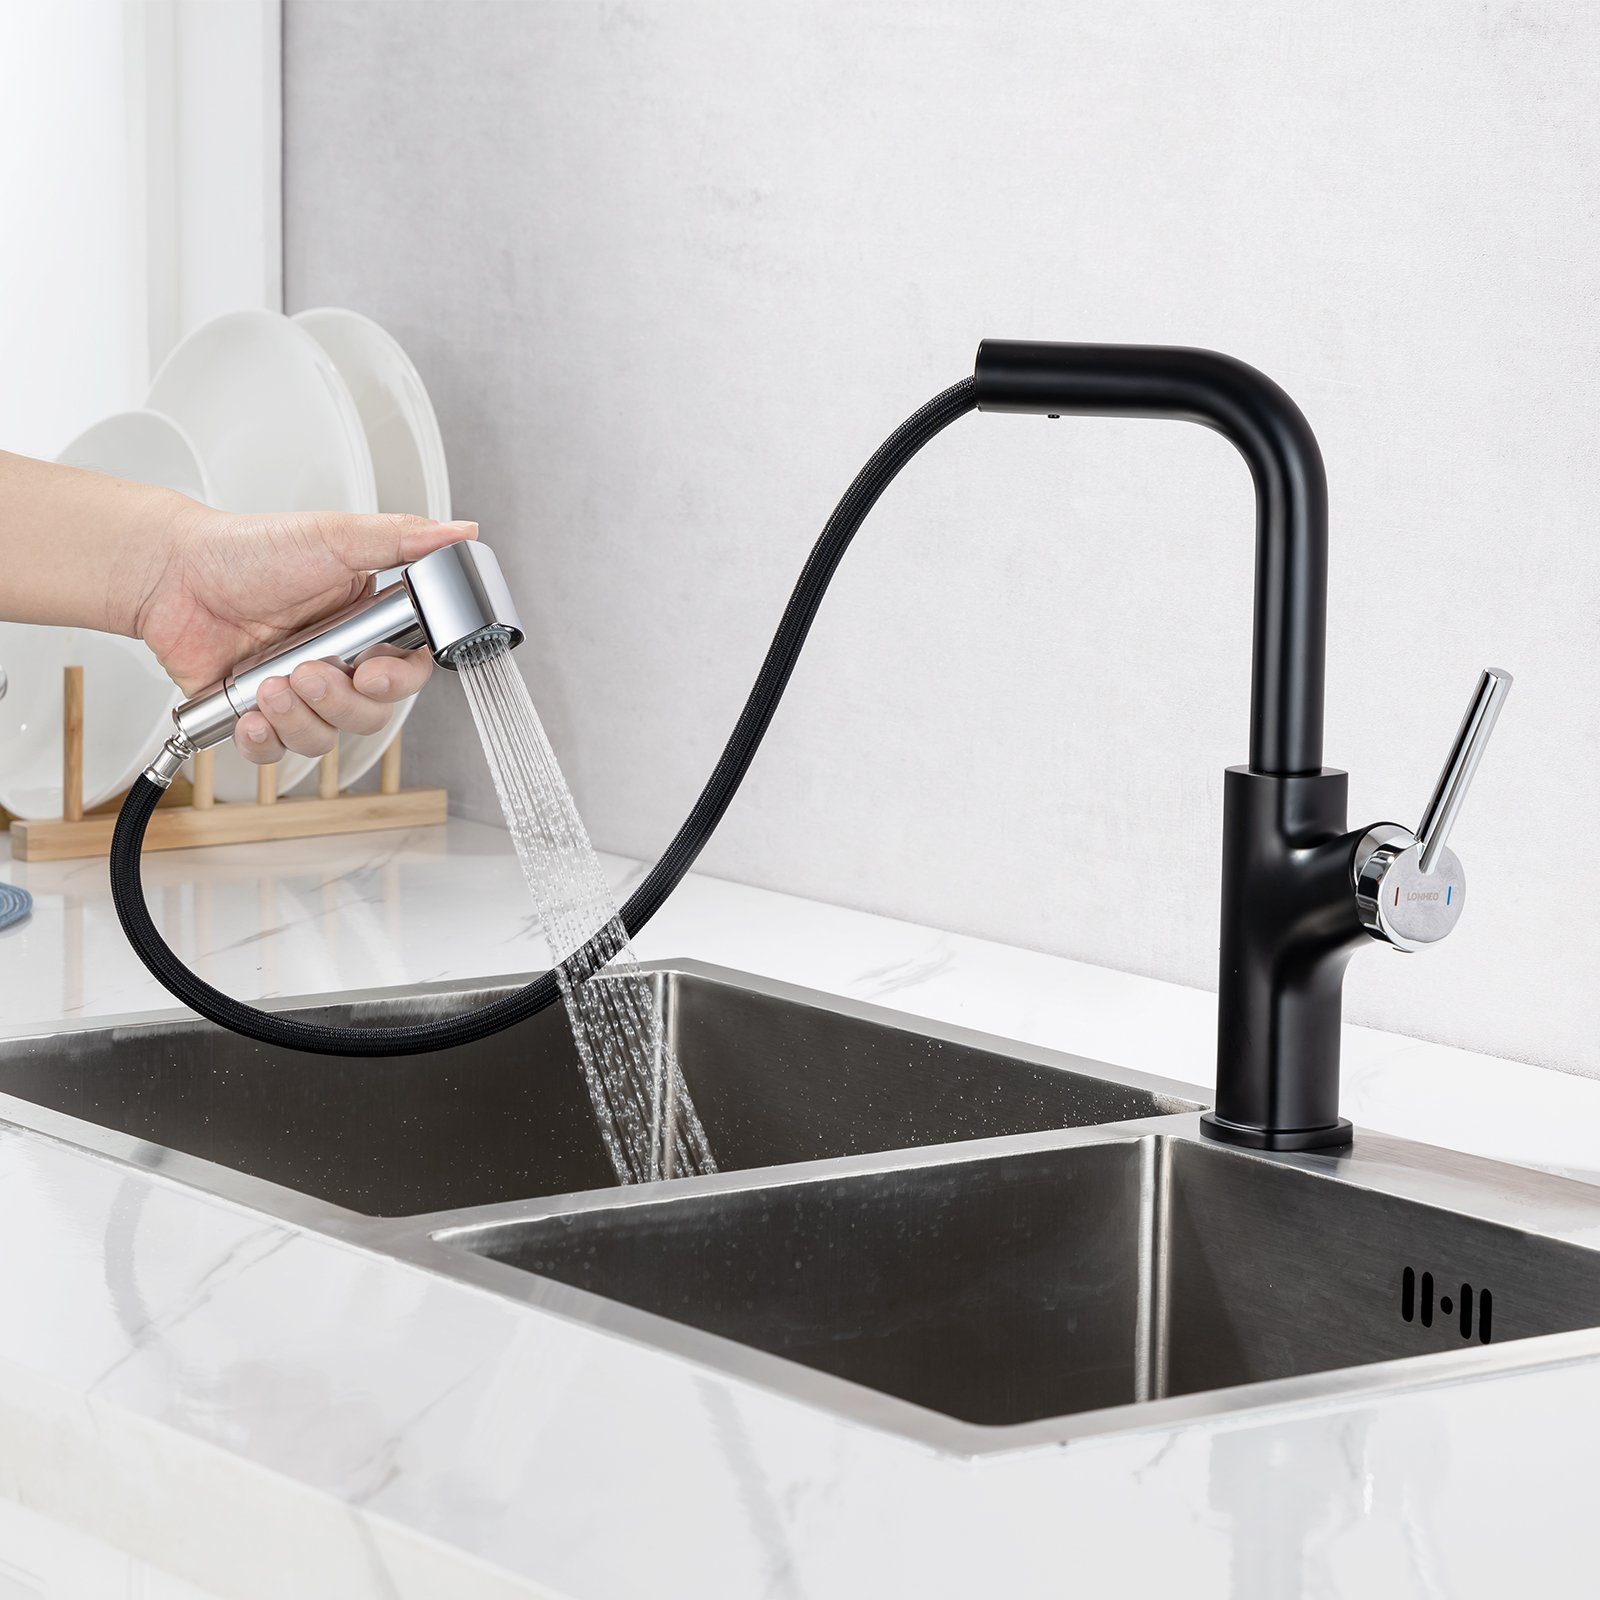 Auralum Küchenarmatur Küchenarmatur Ausziehbar Hochdruck Küchenwasserhah 2 Wasserauslassmodi Chrom+Schwarz | Armaturen